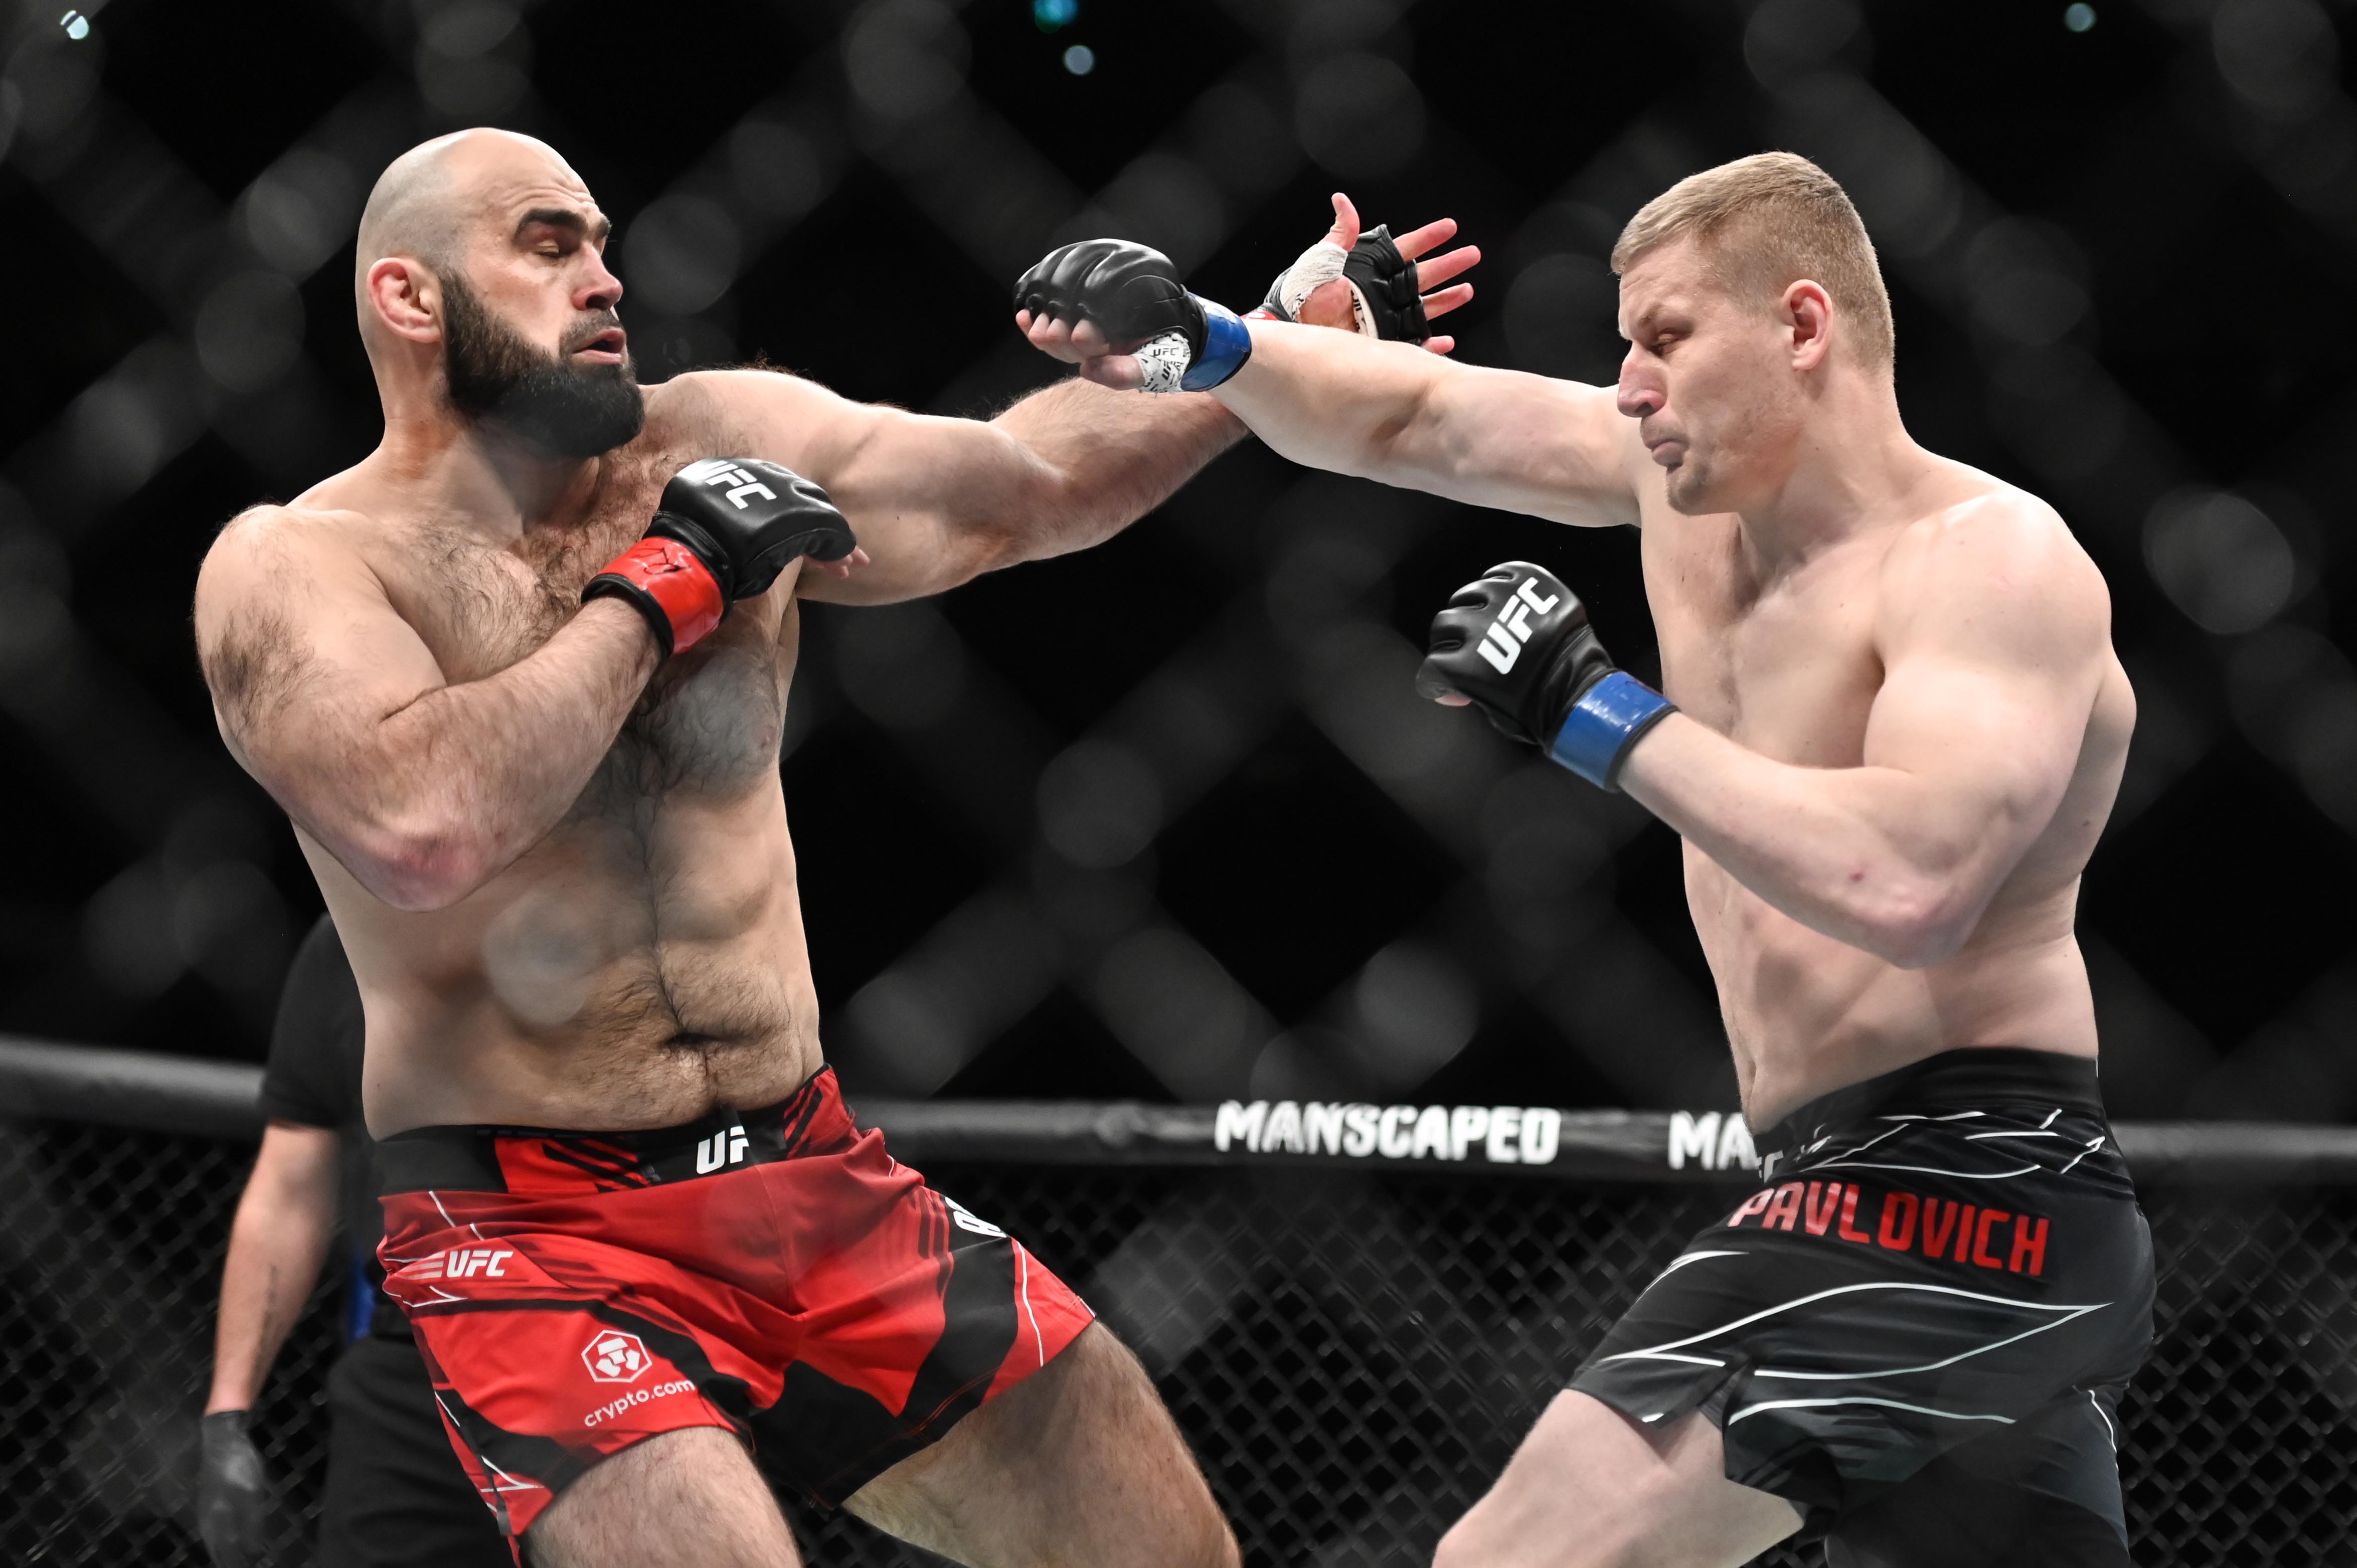 MMA: UFC Fight Night-Abdurakhimov vs Pavlovich